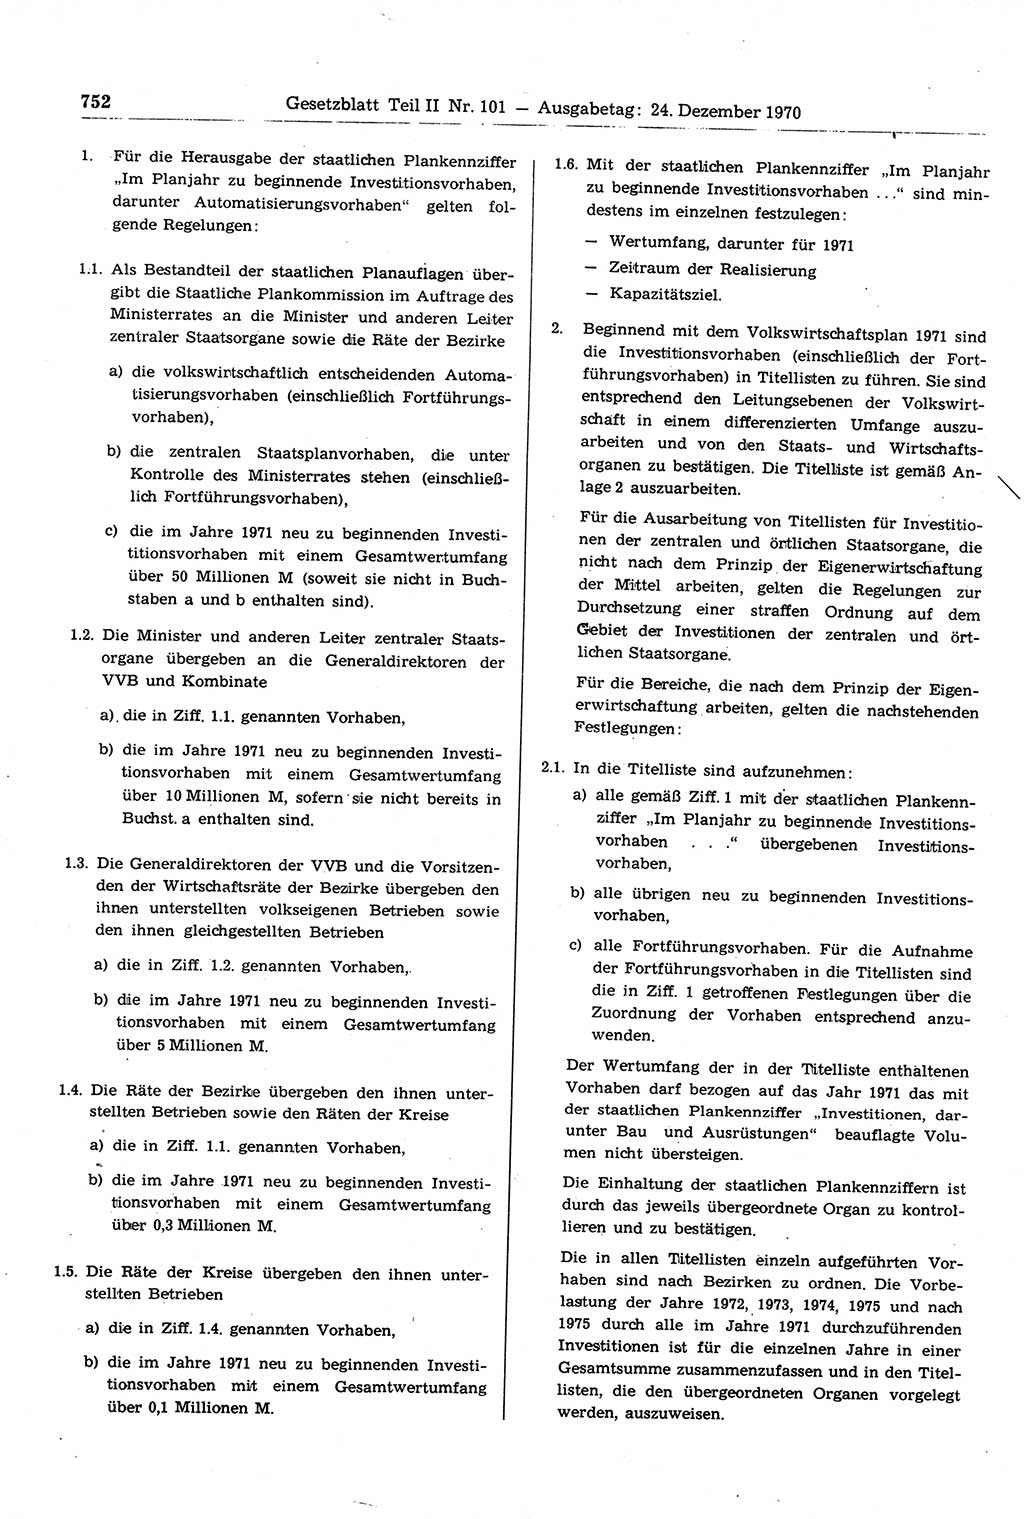 Gesetzblatt (GBl.) der Deutschen Demokratischen Republik (DDR) Teil ⅠⅠ 1970, Seite 752 (GBl. DDR ⅠⅠ 1970, S. 752)